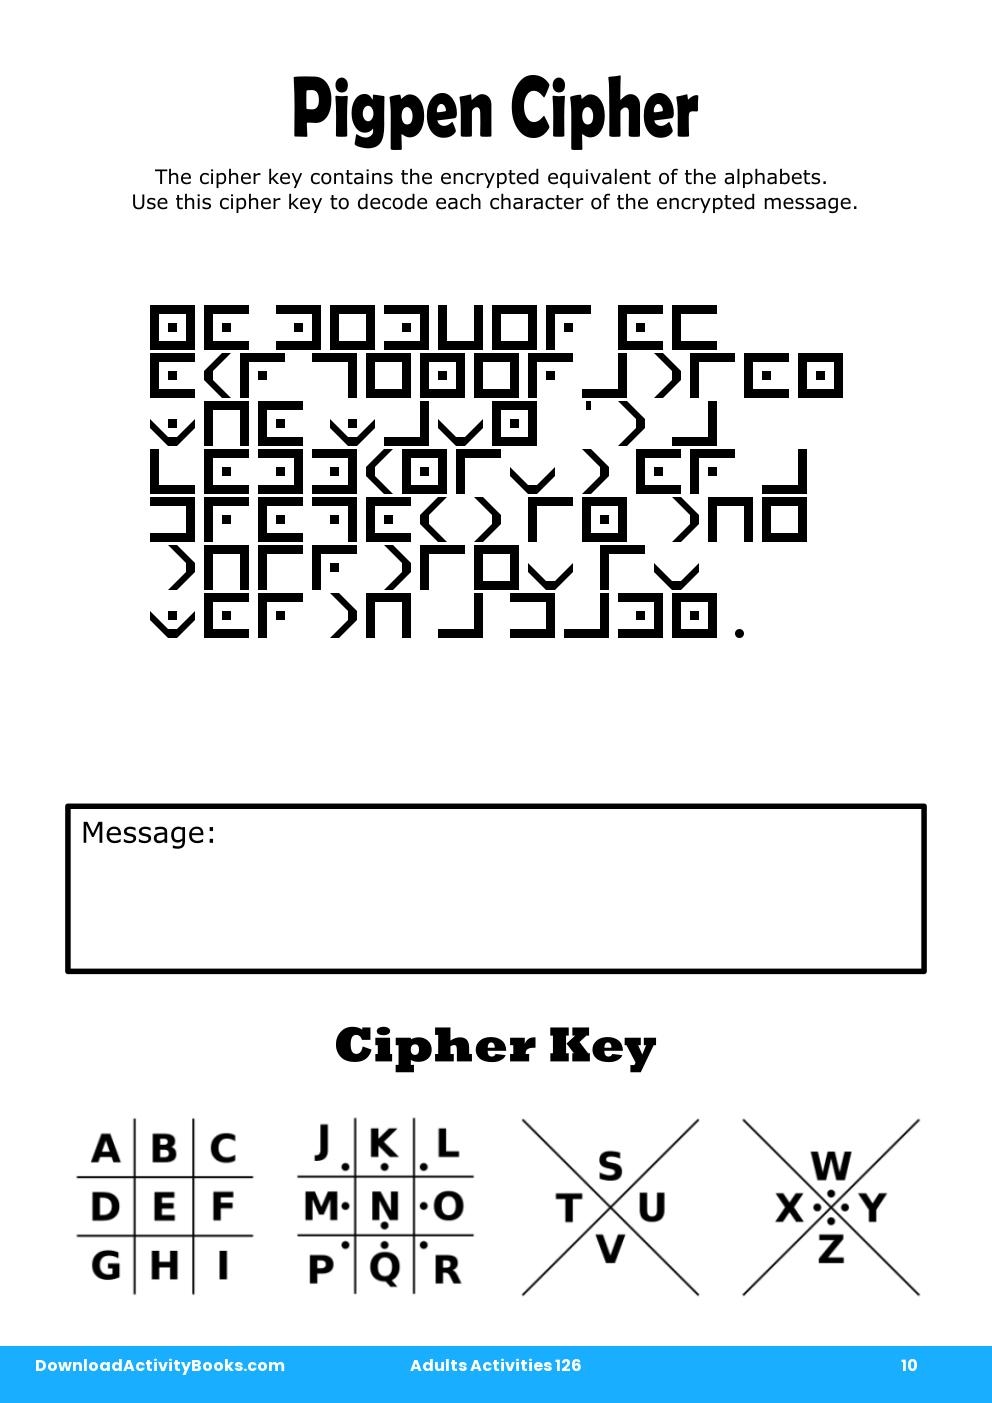 Pigpen Cipher in Adults Activities 126